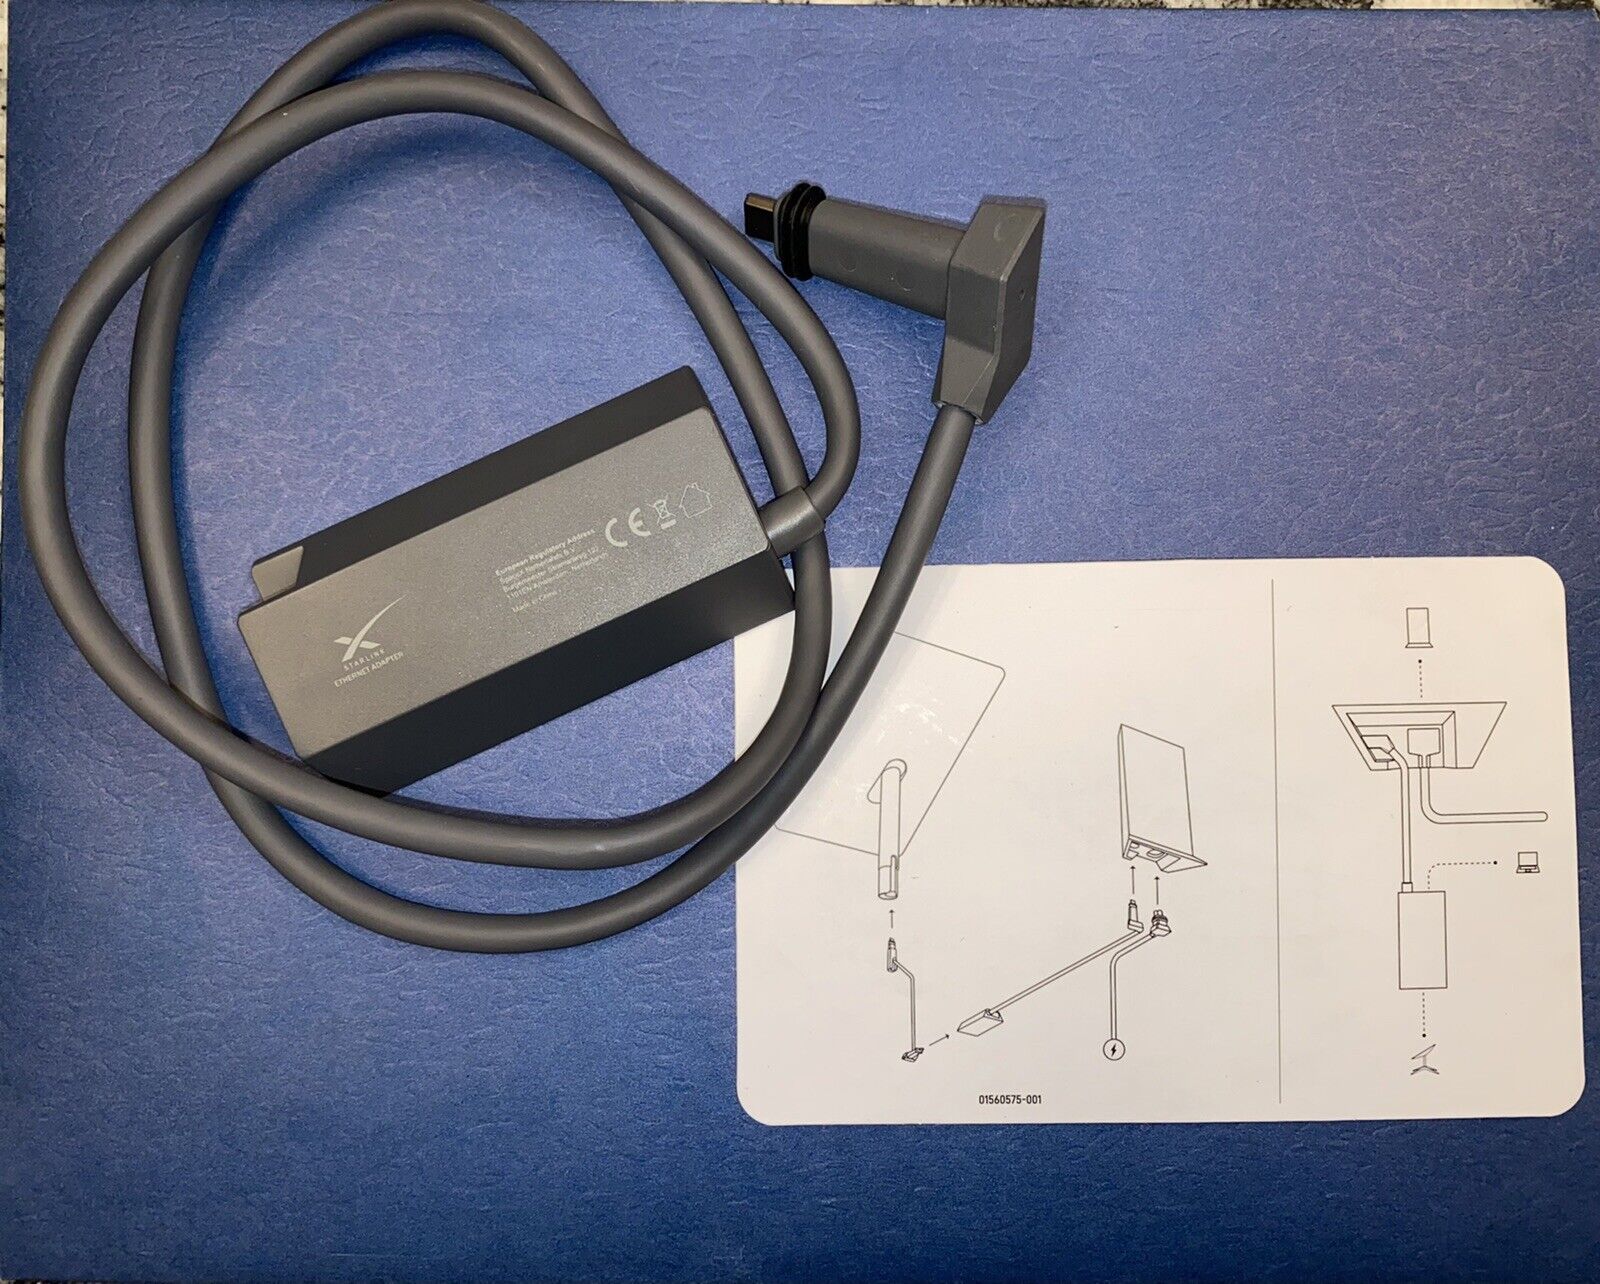 Starlink Ethernet Adapter For RJ45 Ethernet Hook Up